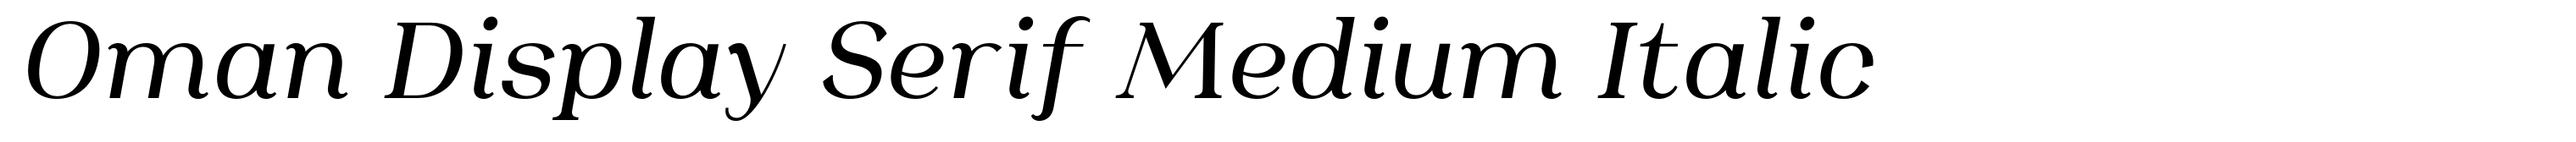 Oman Display Serif Medium Italic